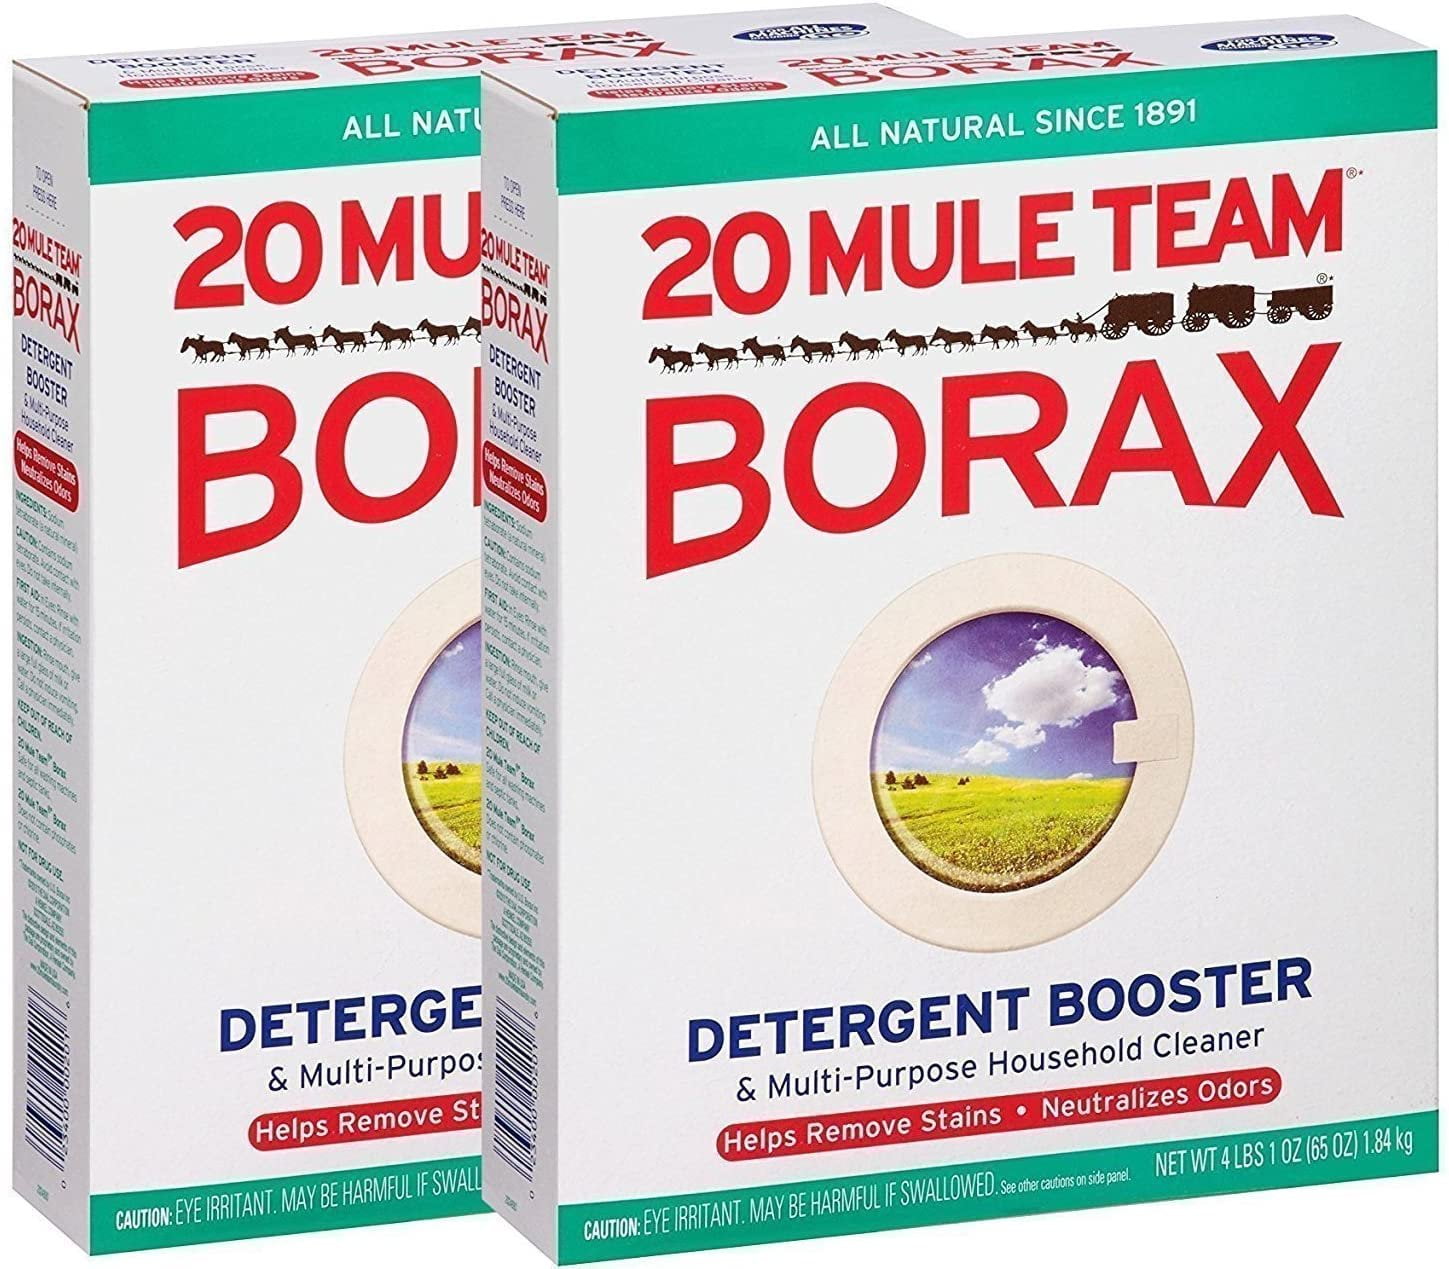 MILLIARD Borax Powder - Pure Multi-Purpose Cleaner 1 lb. Bag 1 Pound